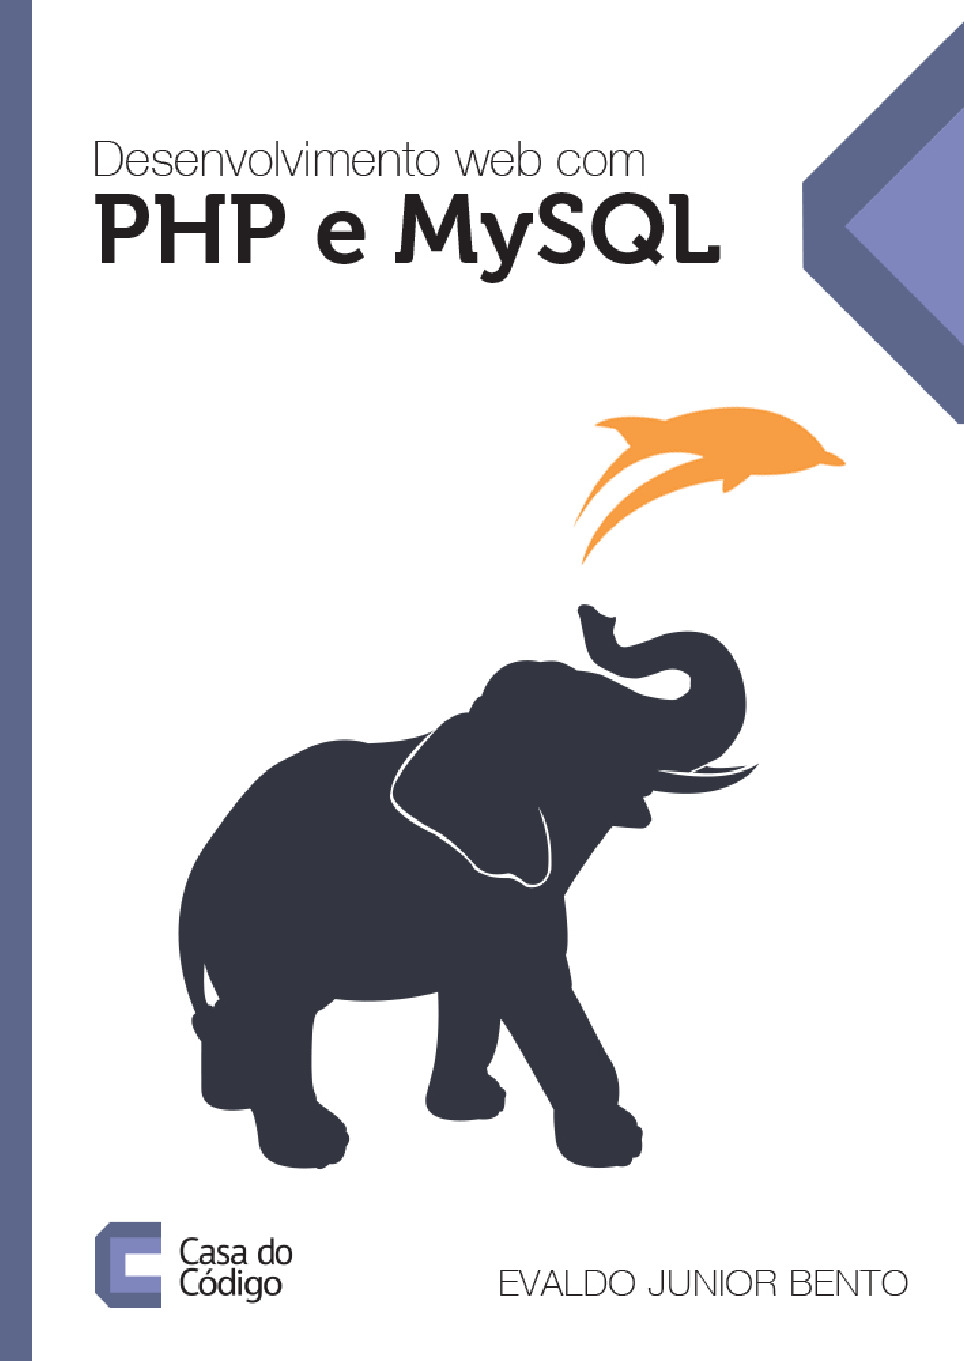 Desenvolvimento web com PHP e MySQL – Casa do Codigo